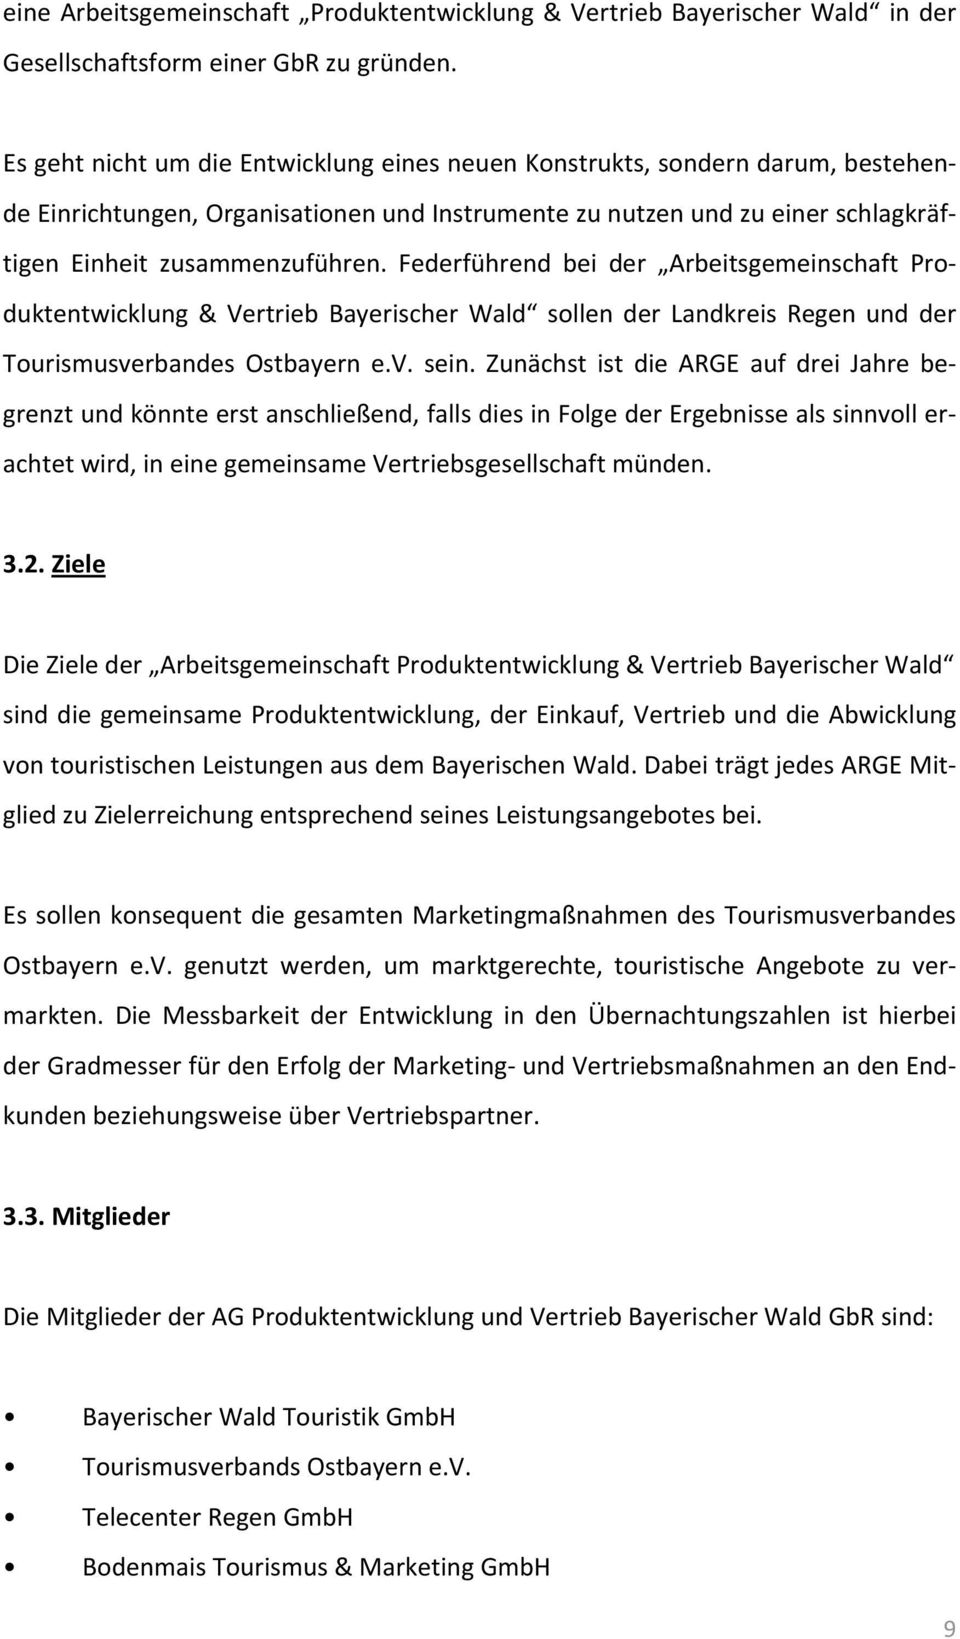 Federführend bei der Arbeitsgemeinschaft Produktentwicklung & Vertrieb Bayerischer Wald sollen der Landkreis Regen und der Tourismusverbandes Ostbayern e.v. sein.